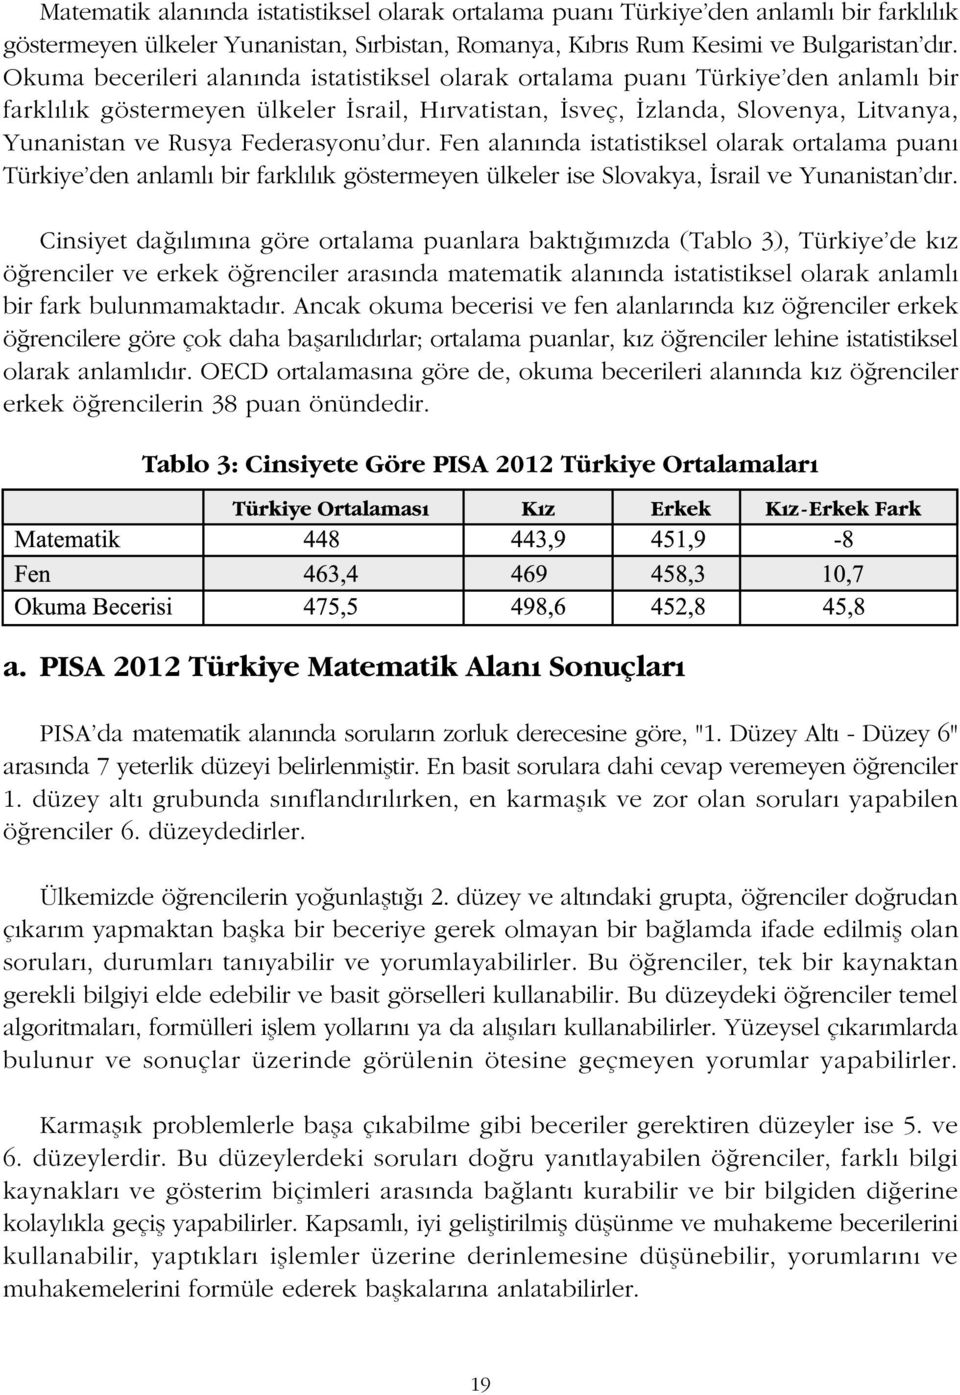 Federasyonu'dur. Fen alanýnda istatistiksel olarak ortalama puaný Türkiye'den anlamlý bir farklýlýk göstermeyen ülkeler ise Slovakya, Ýsrail ve Yunanistan'dýr.